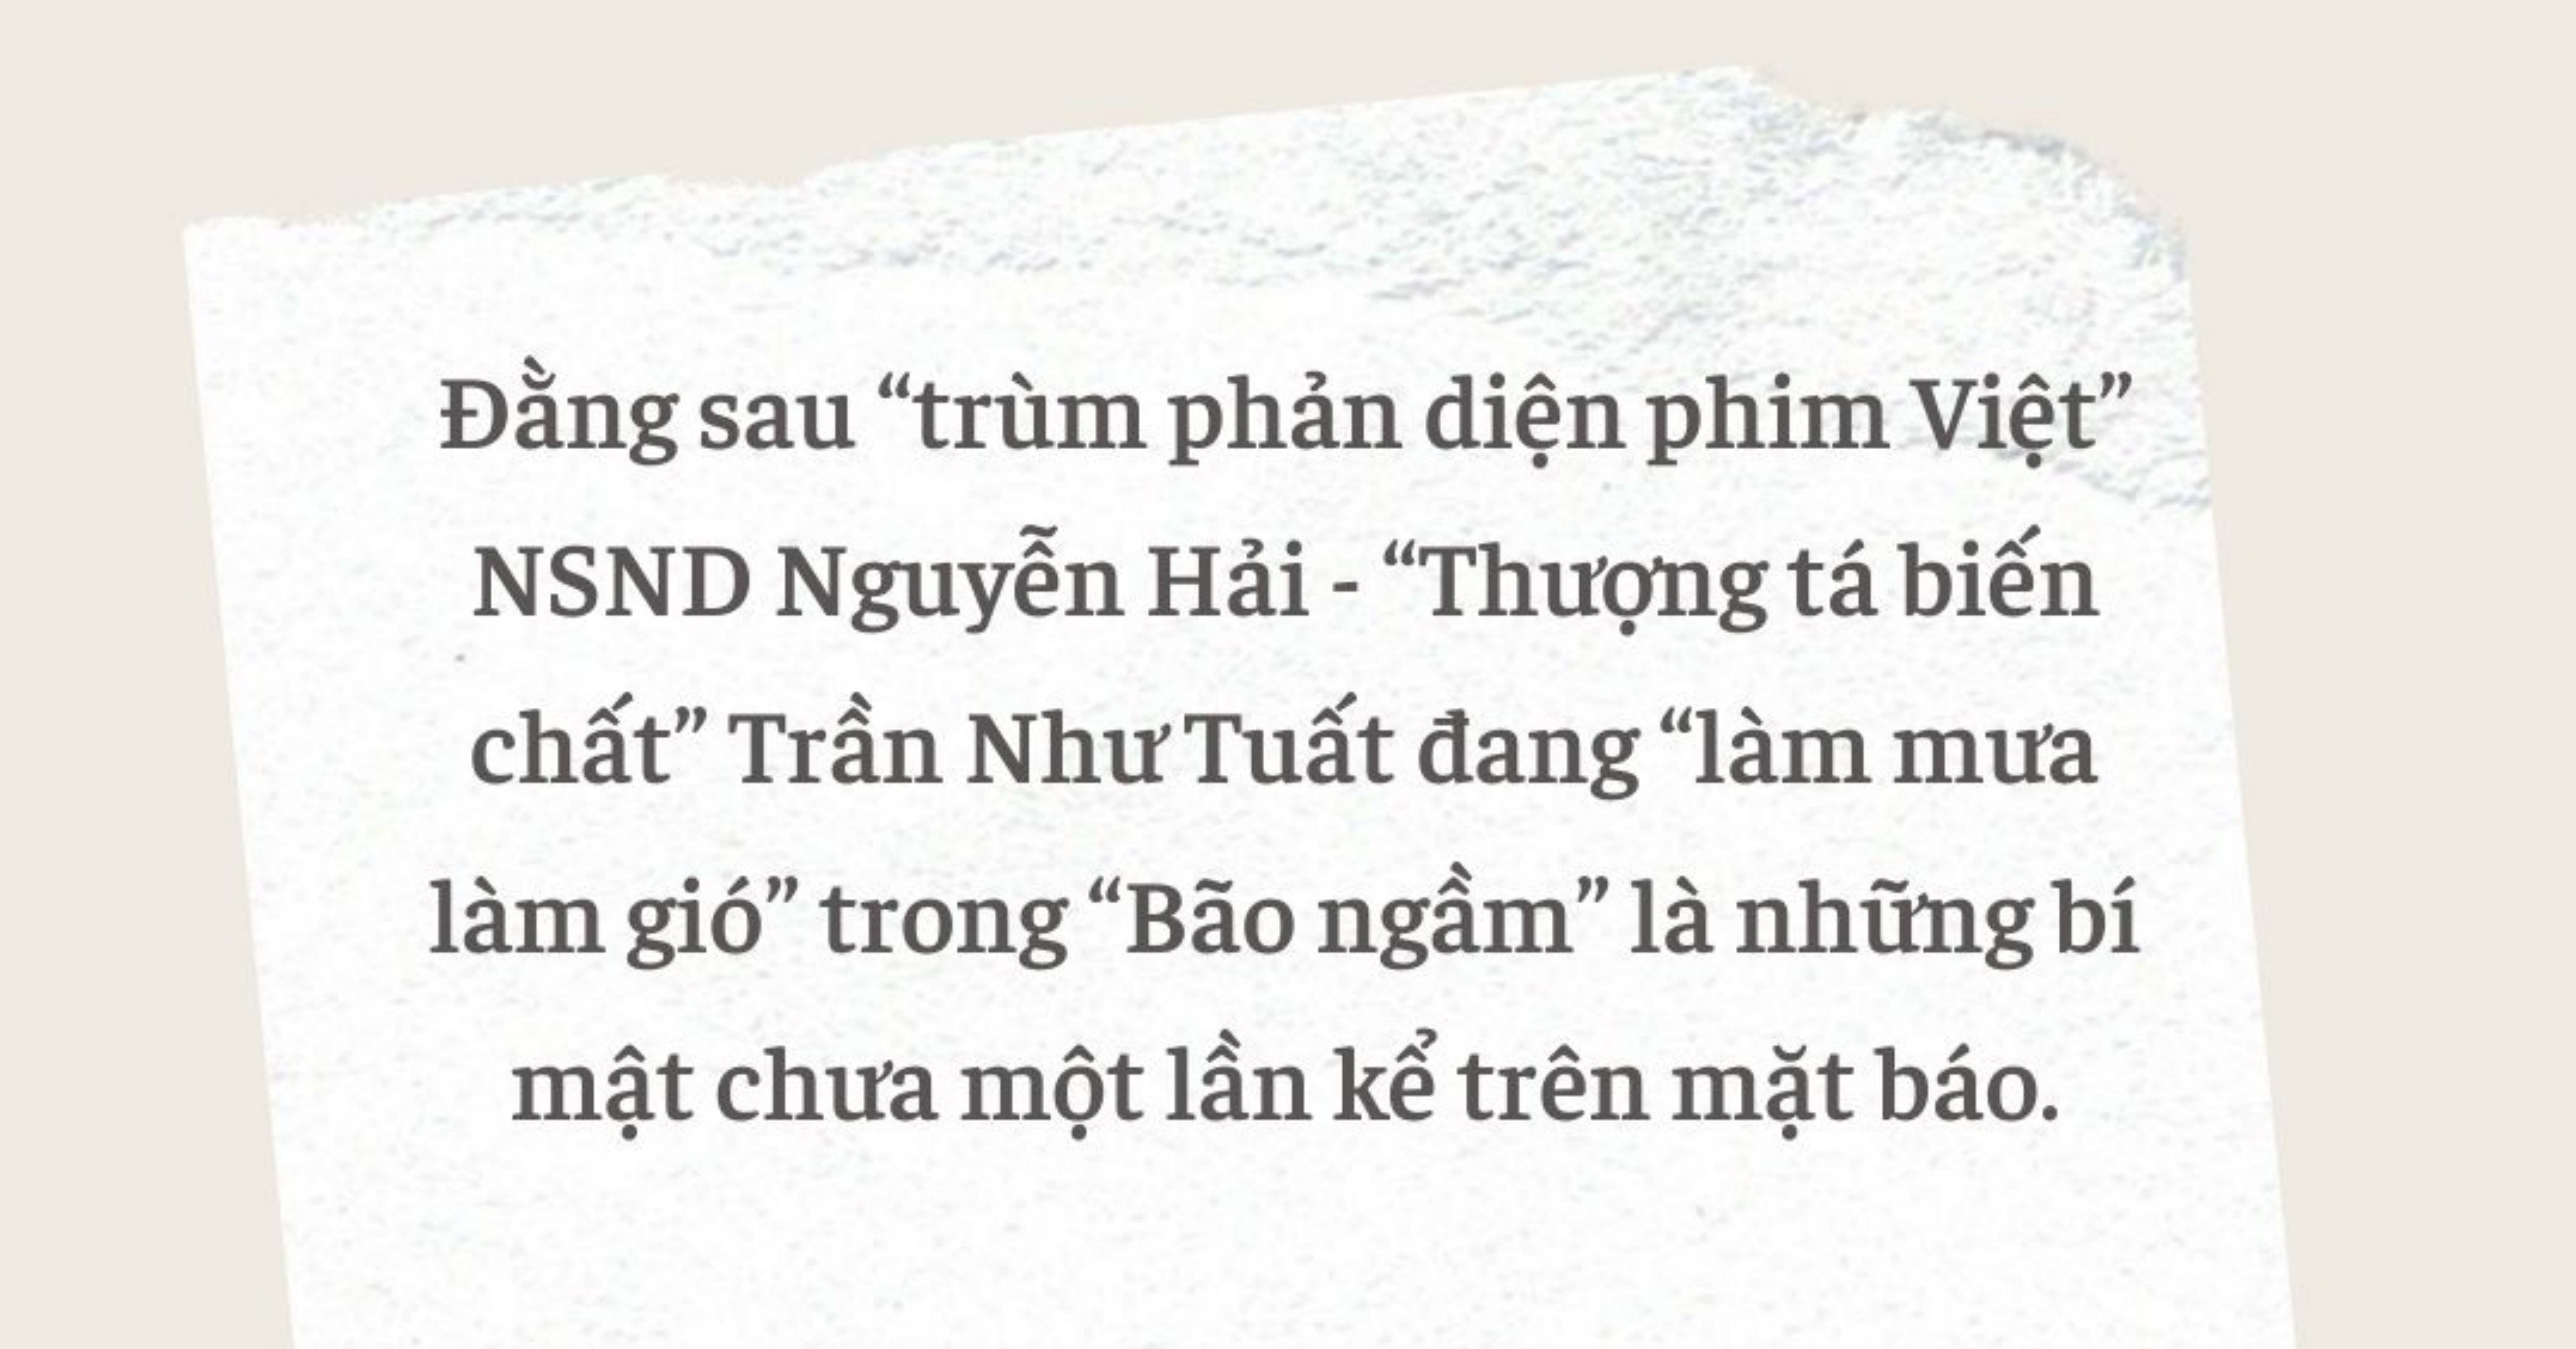 Trùm phản diện phim Việt: Hơn 20 lần vào trại giam và phút đối diện tử tù - 1